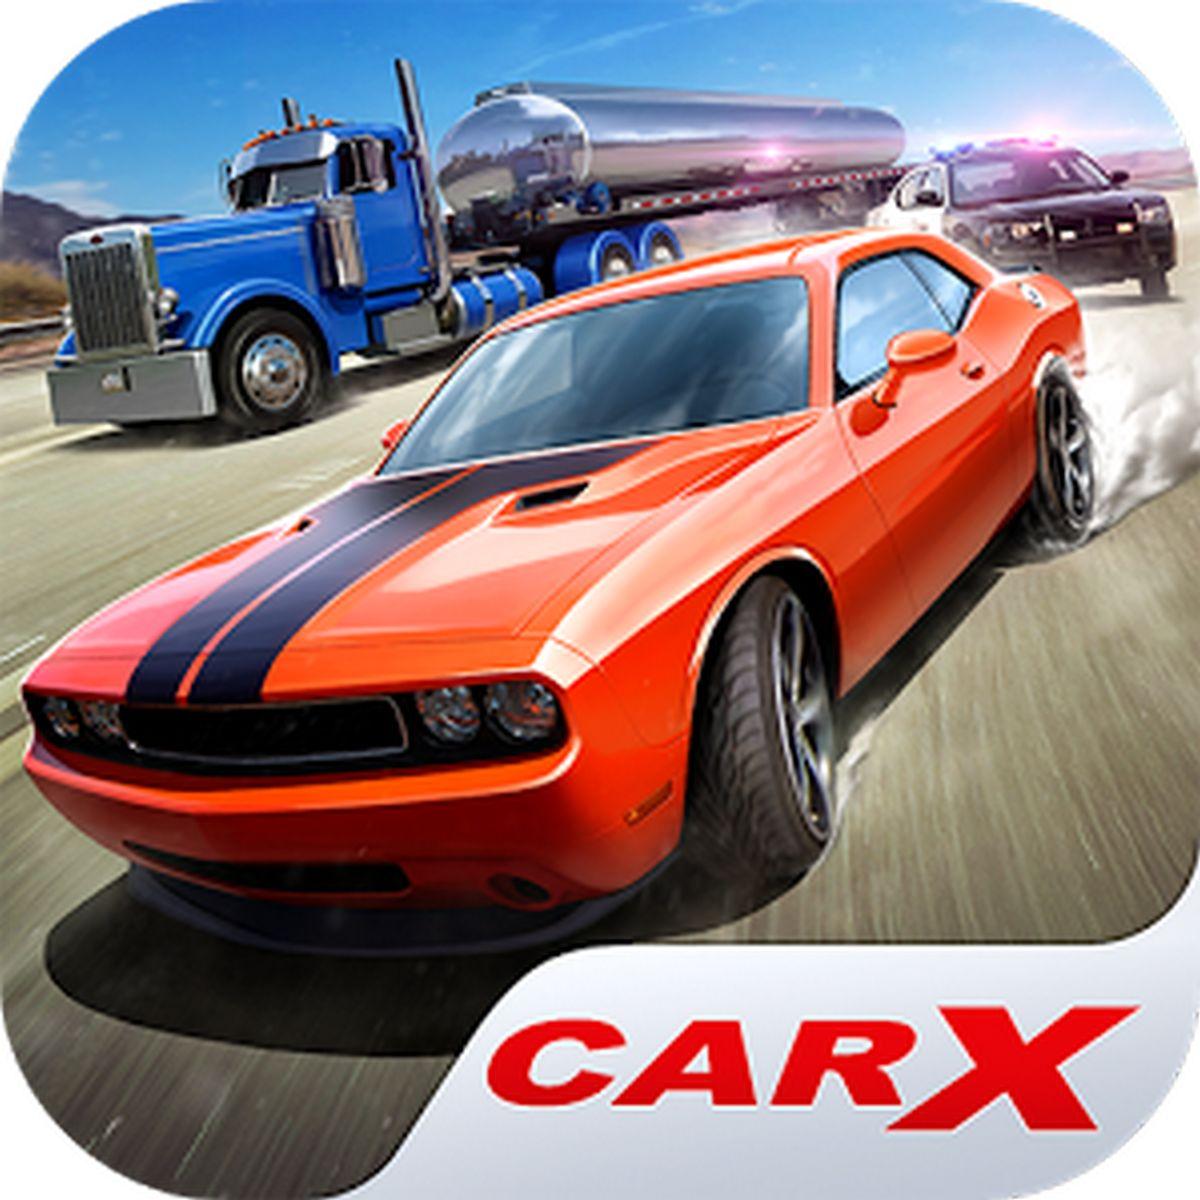 CarX Highway Racing APK MOD